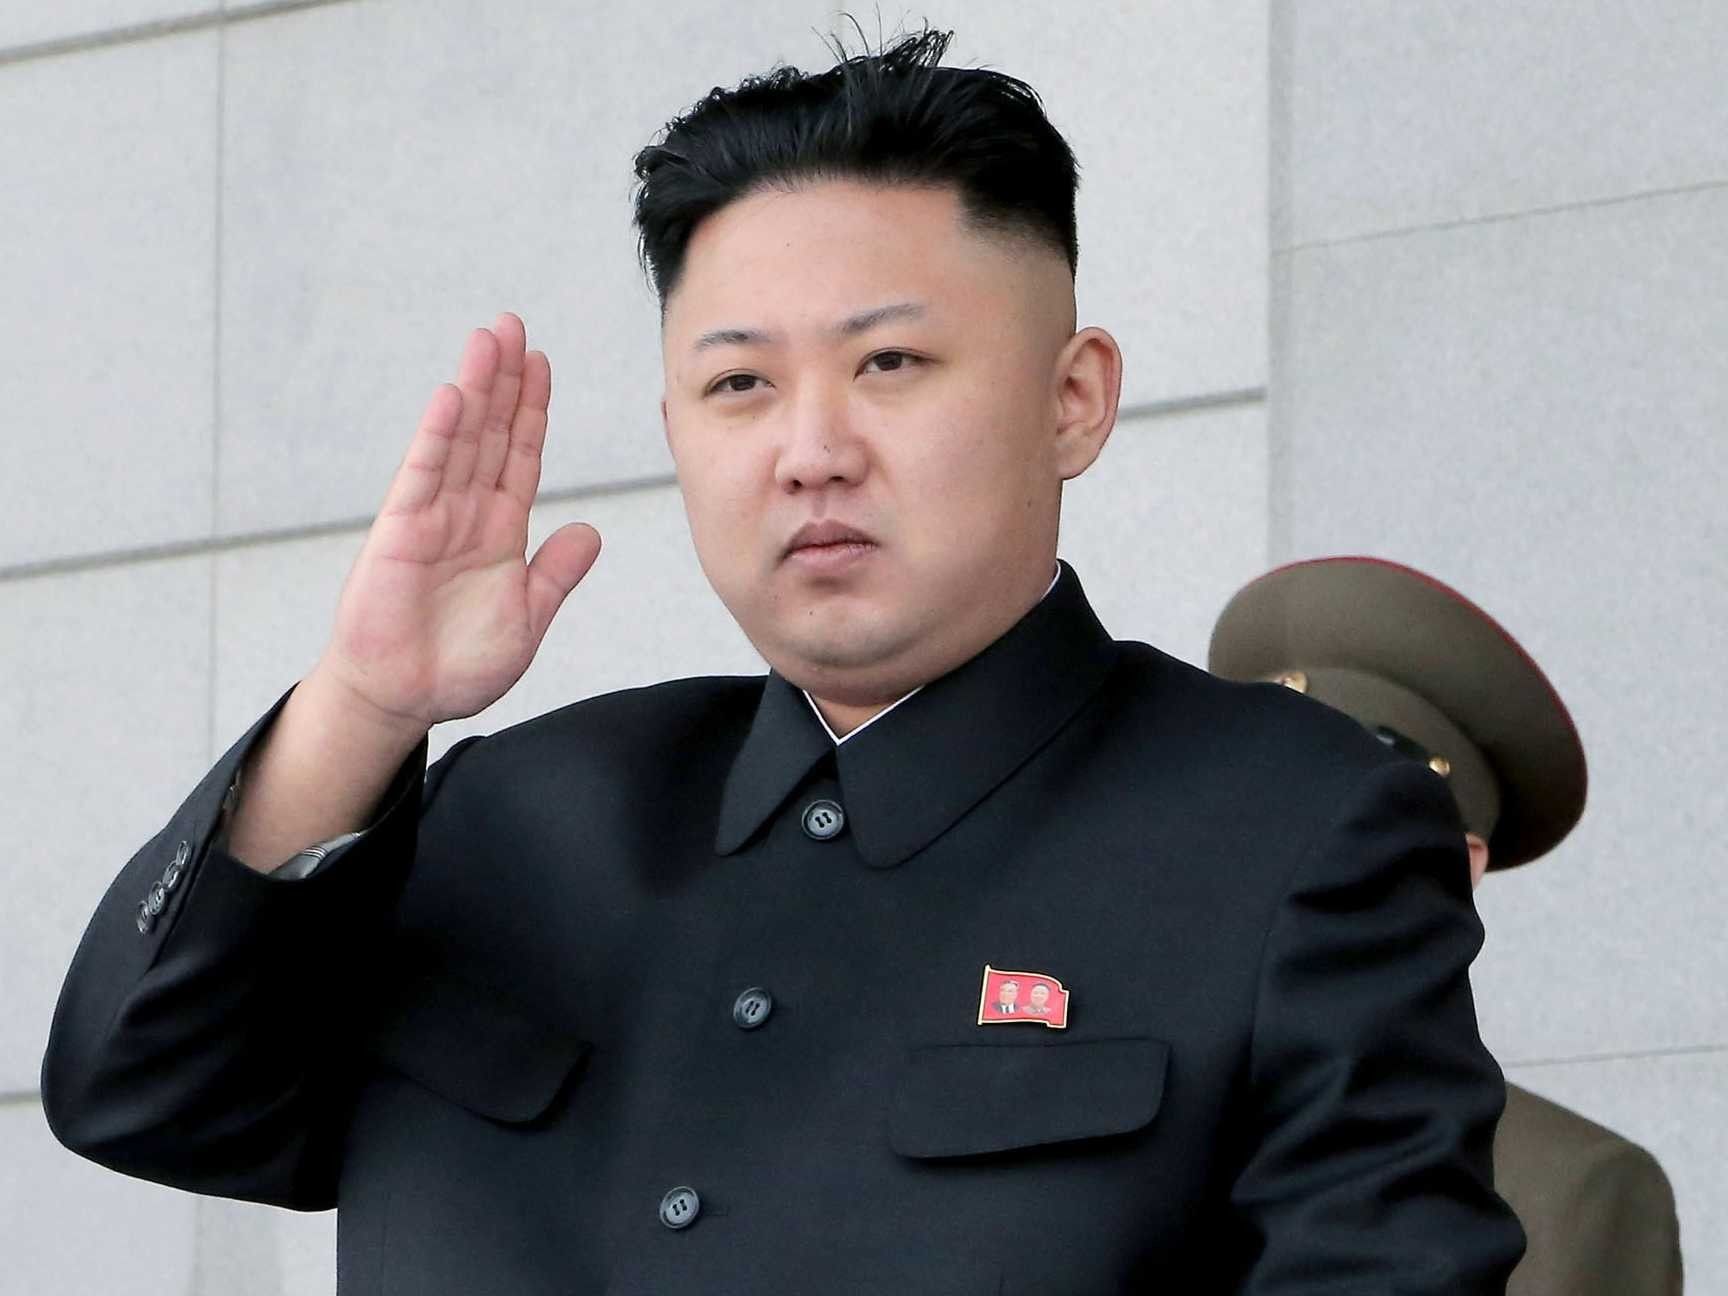 उत्तर कोरिया नई मिसाइल के परीक्षण की तैयारी में: रिपोर्ट